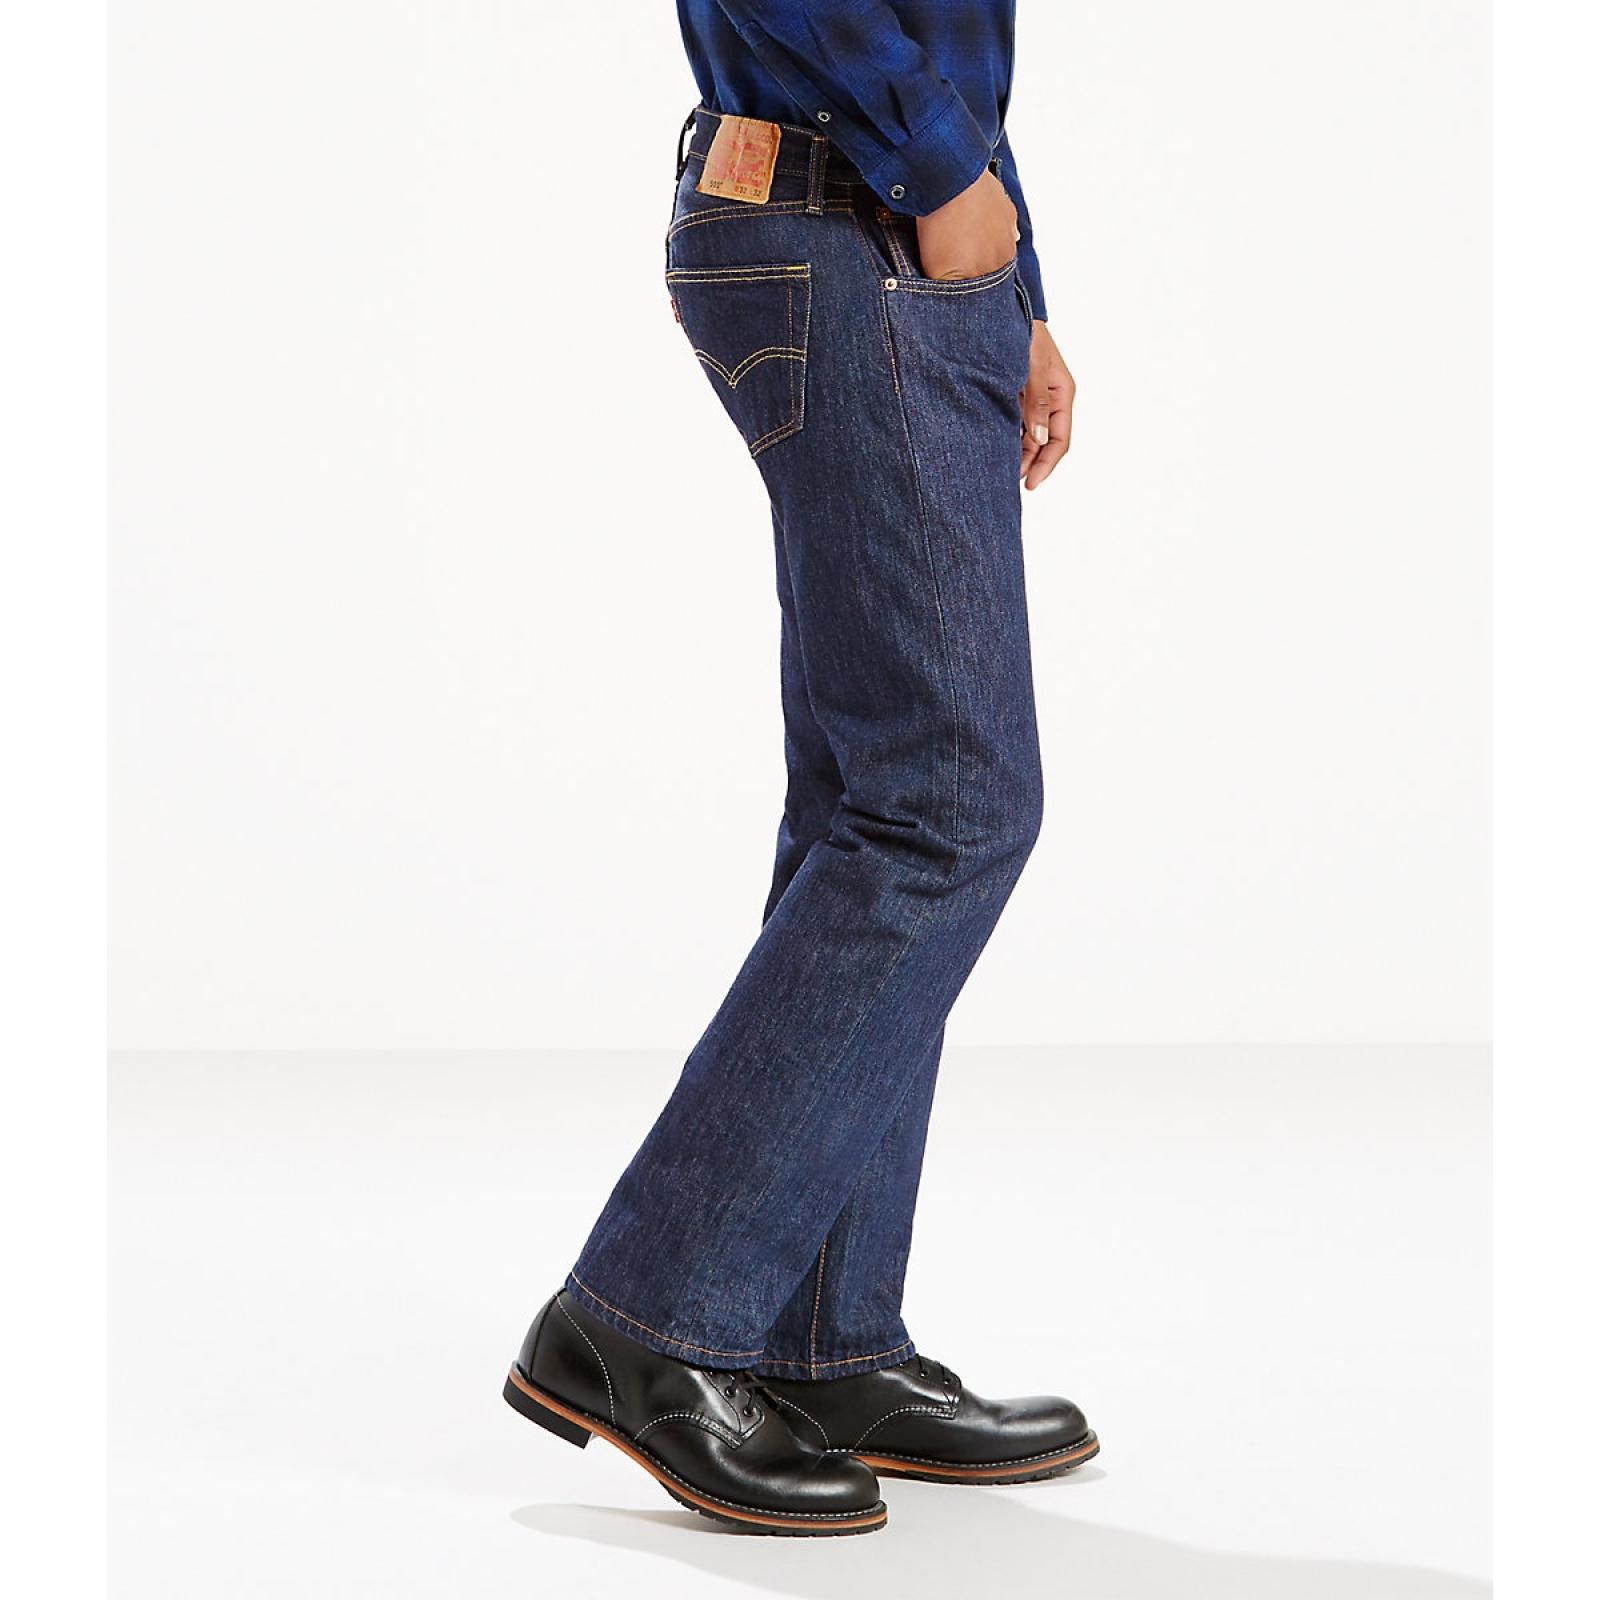 Levi's 501® Original Fit Men's Jeans